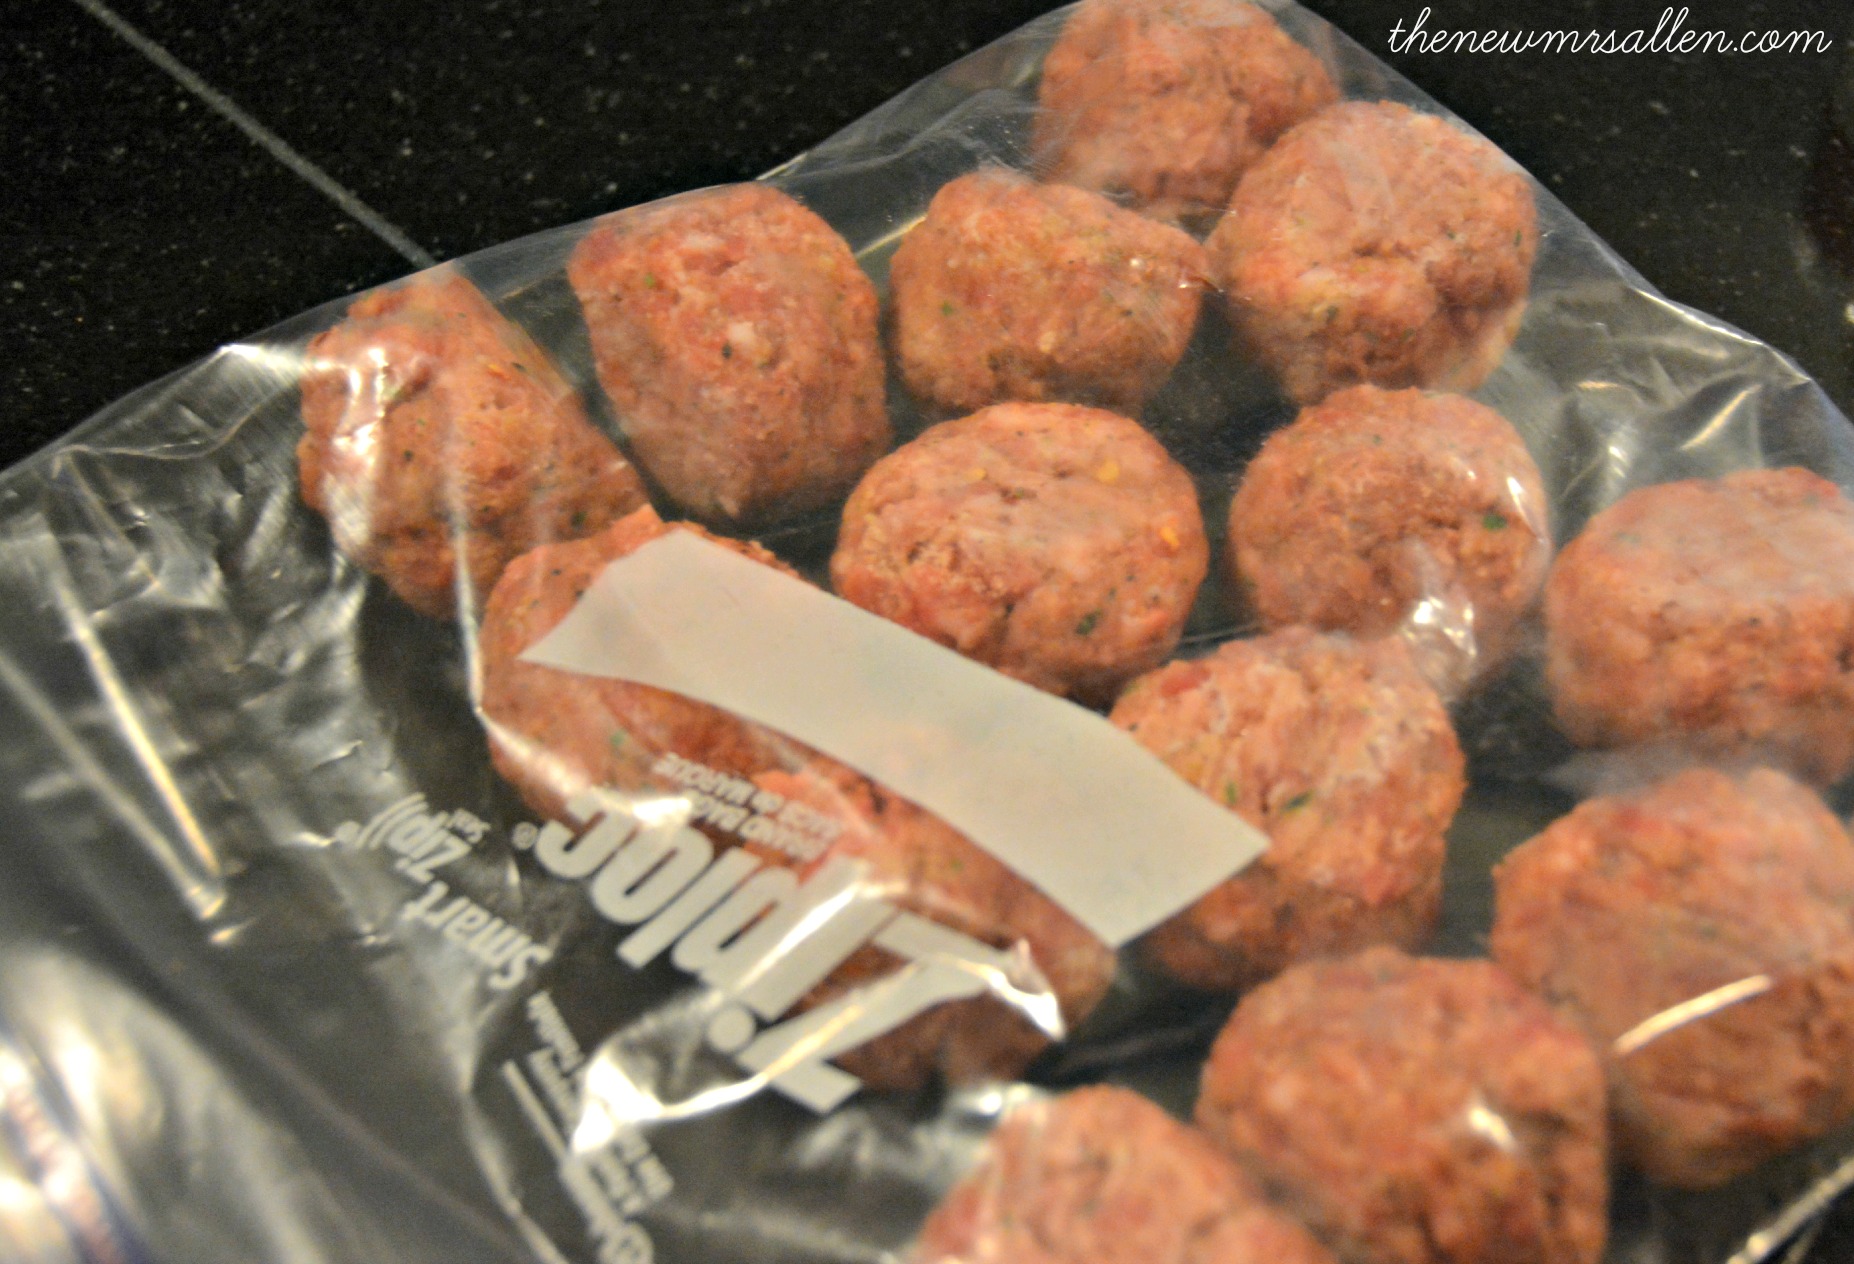 frozen bagged meatballs